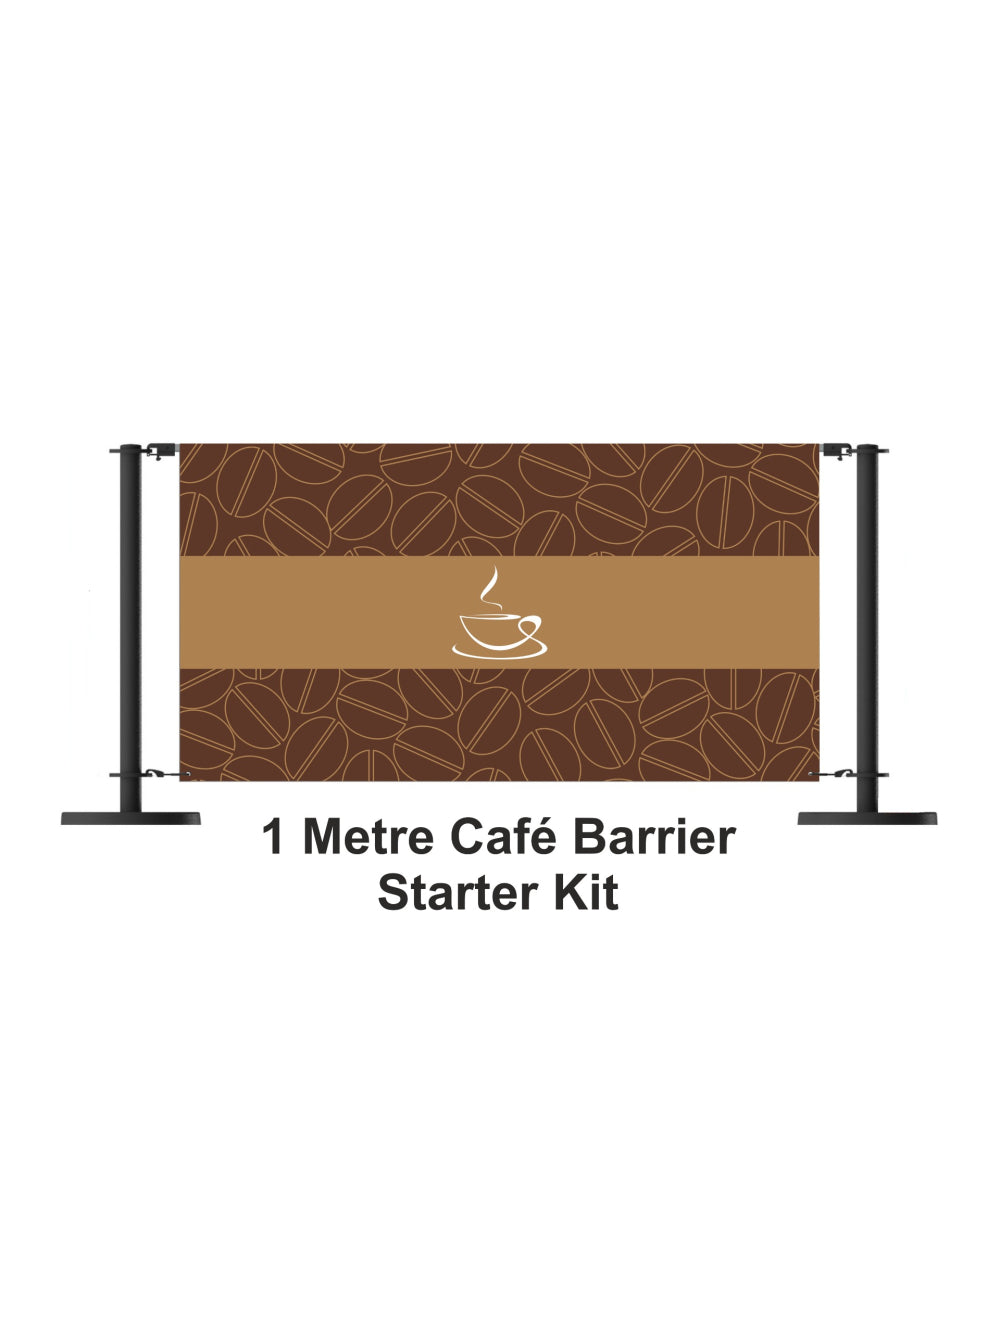 Κιτ εκκίνησης 1 Meter Cafe Barrier